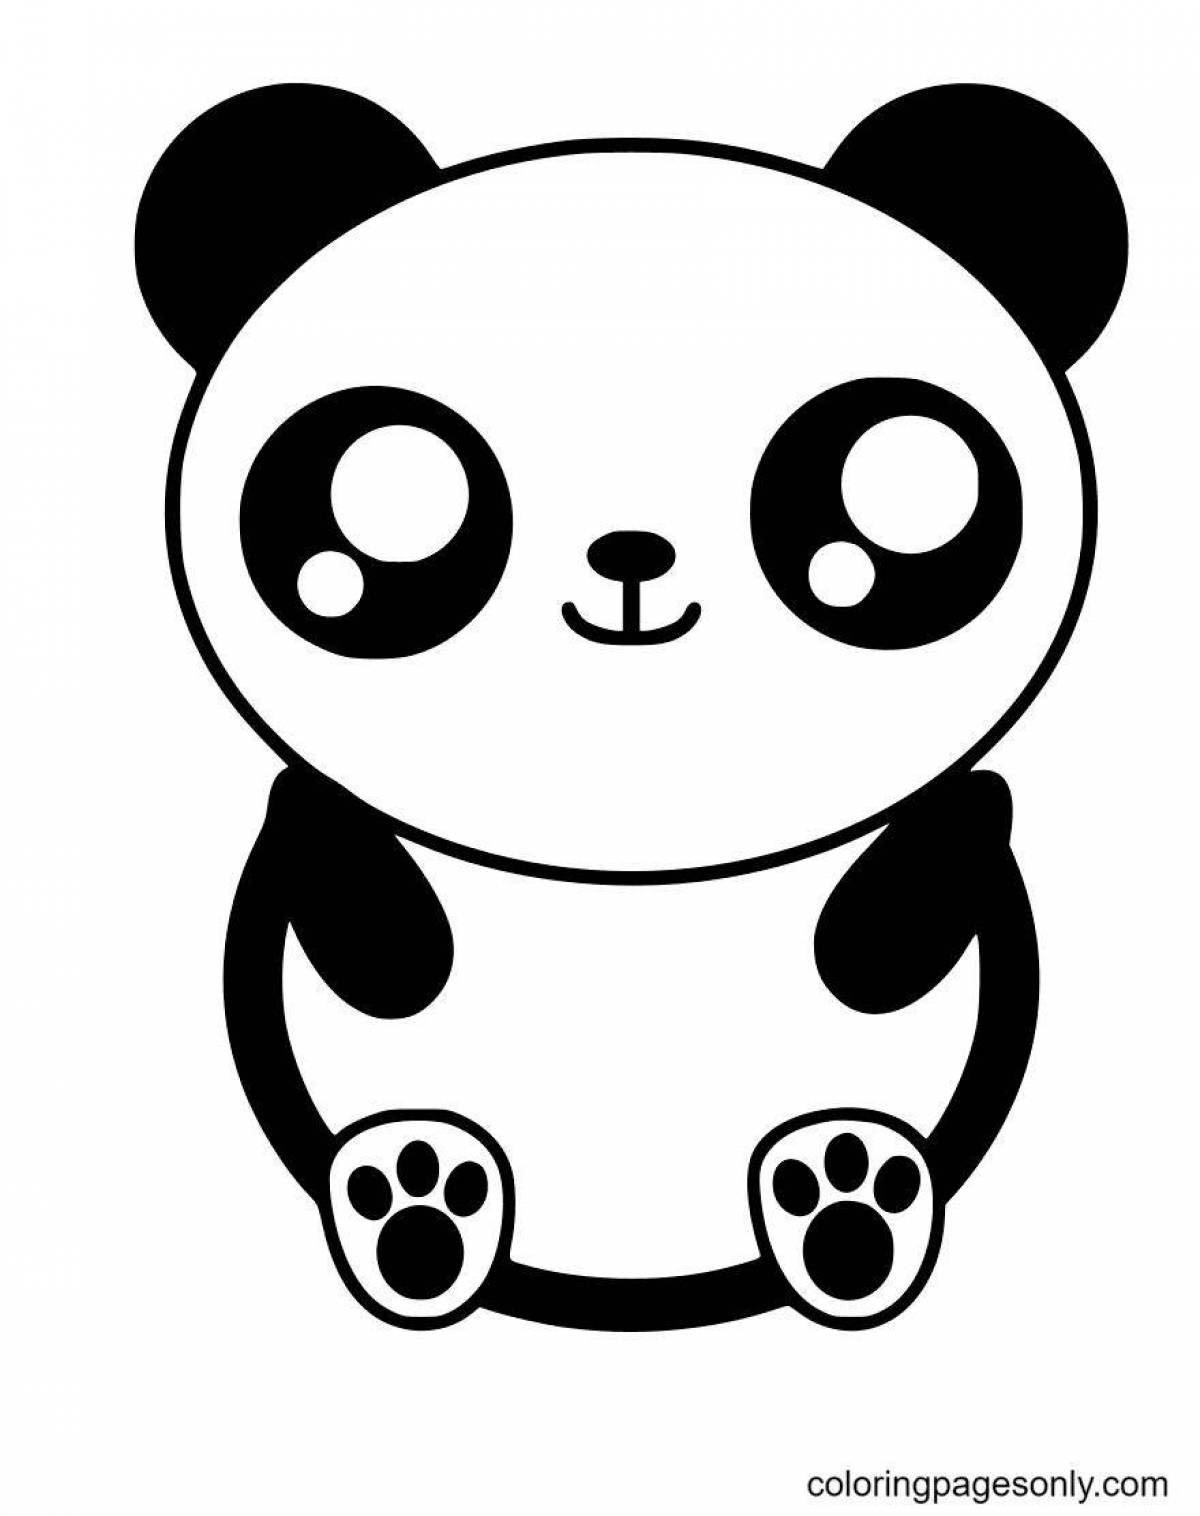 Smiling cute panda coloring book